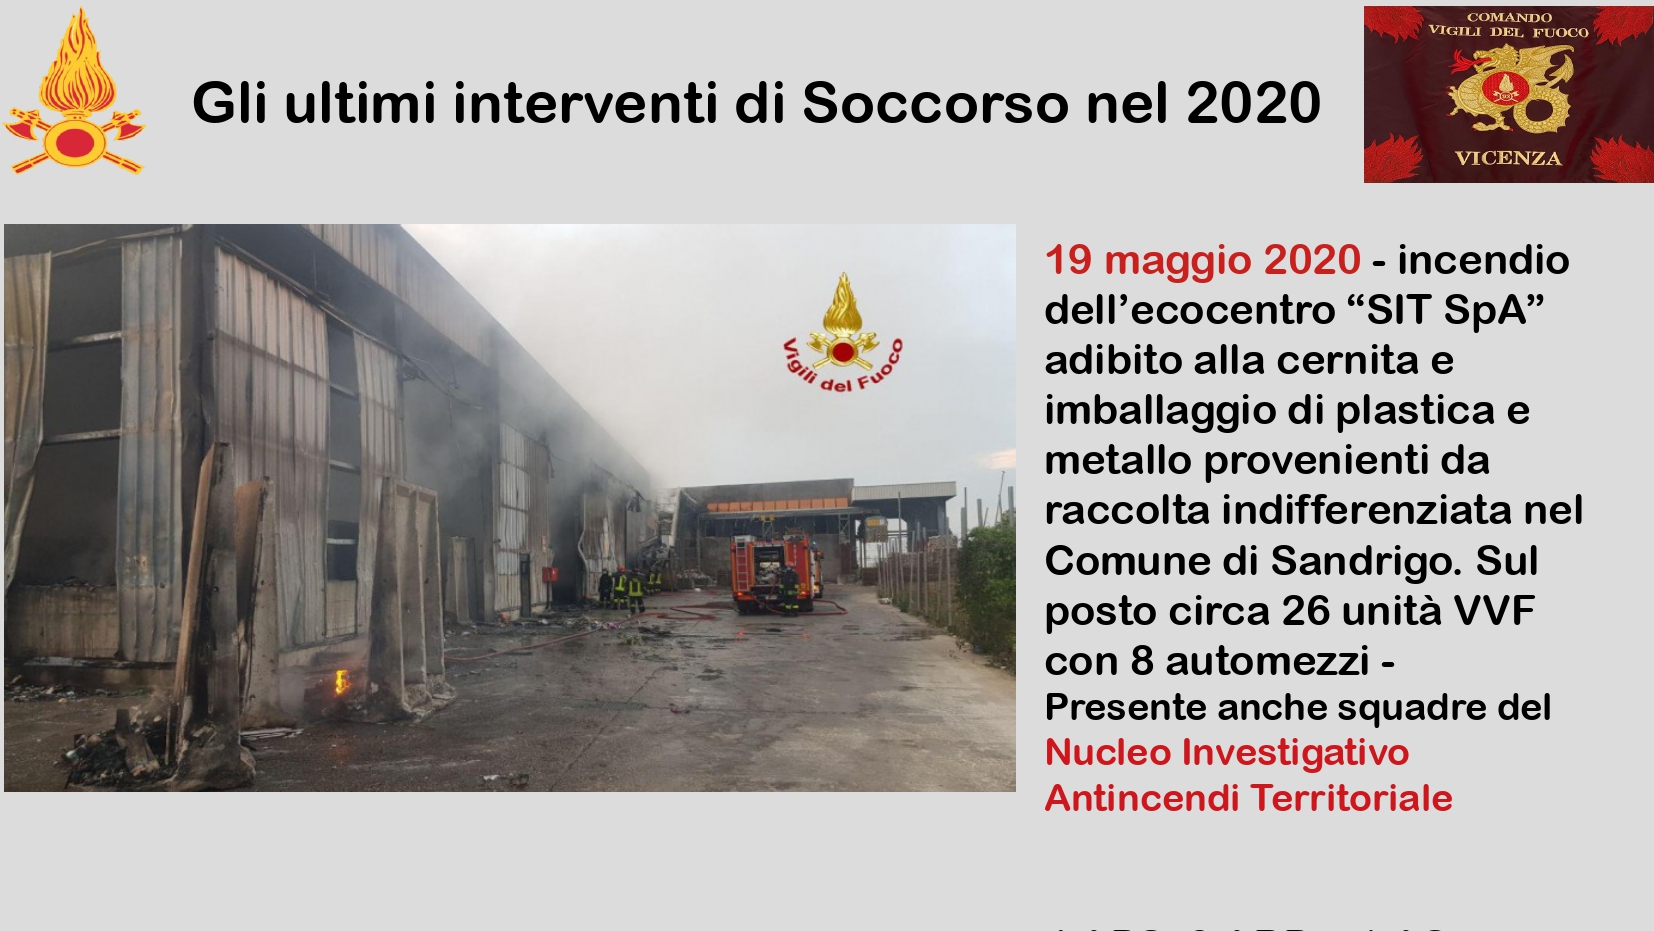 Presentazione_ Comando Vicenza_page-0018